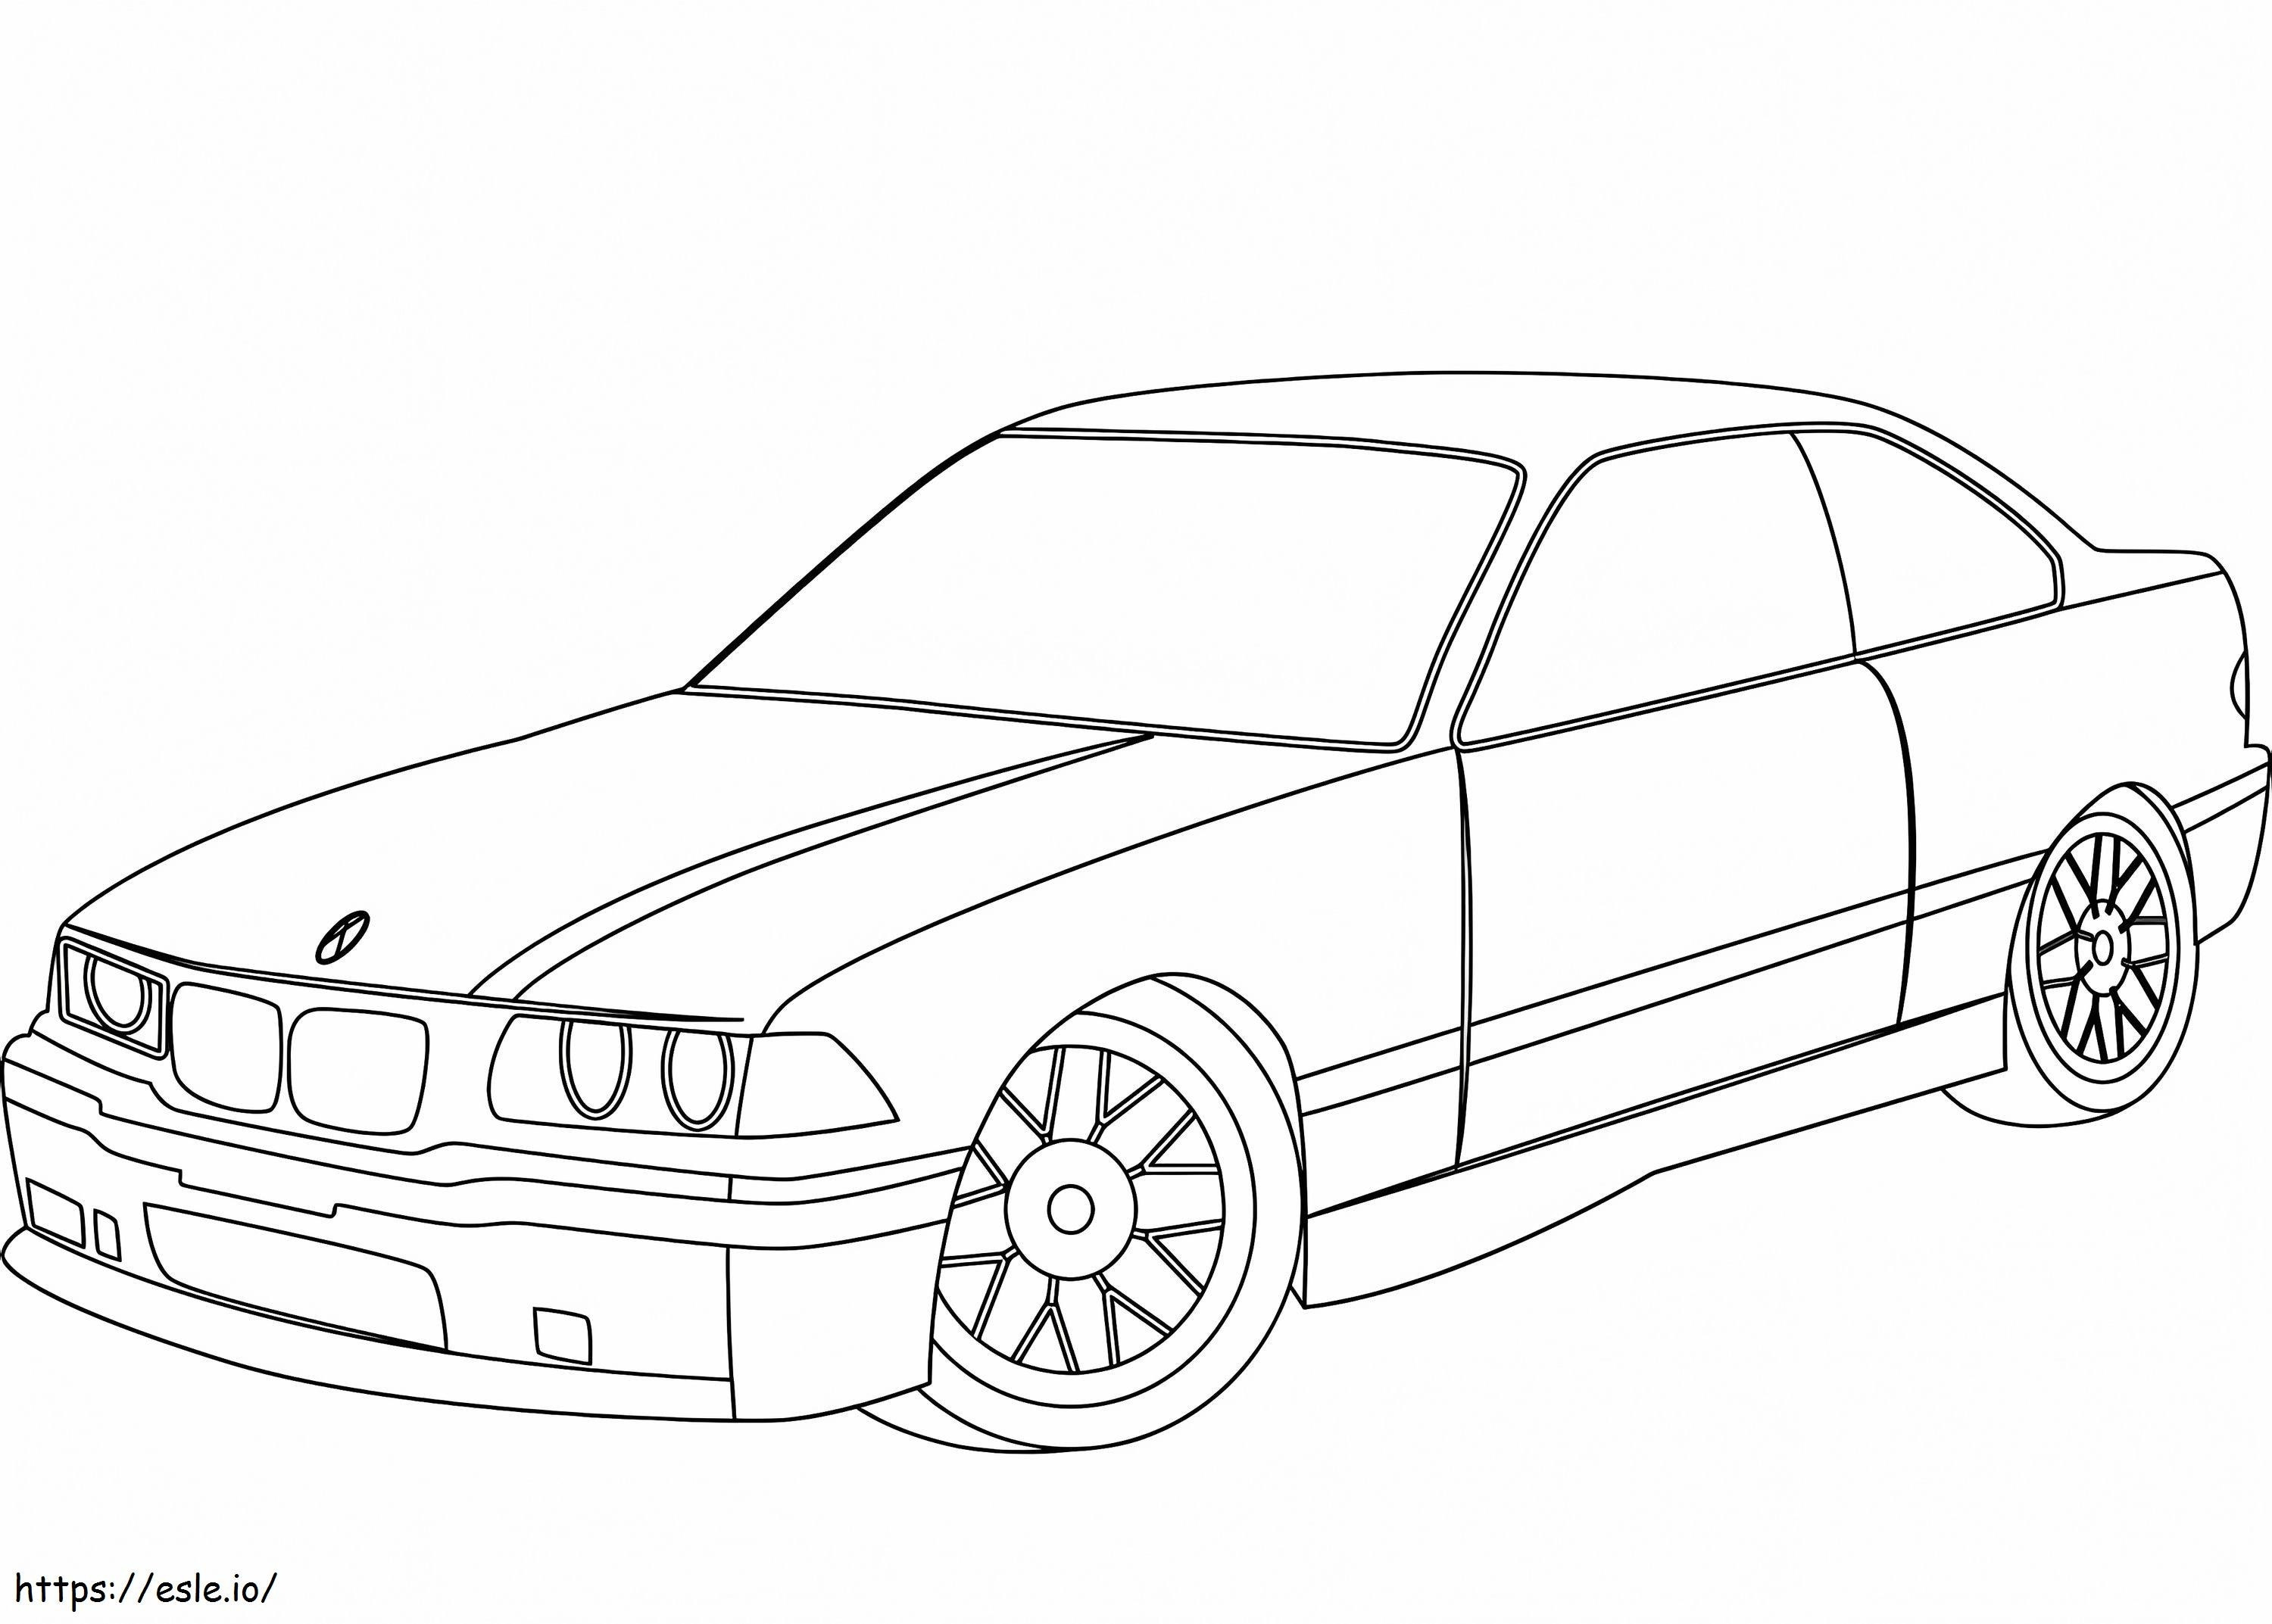 BMW E36 kifestő